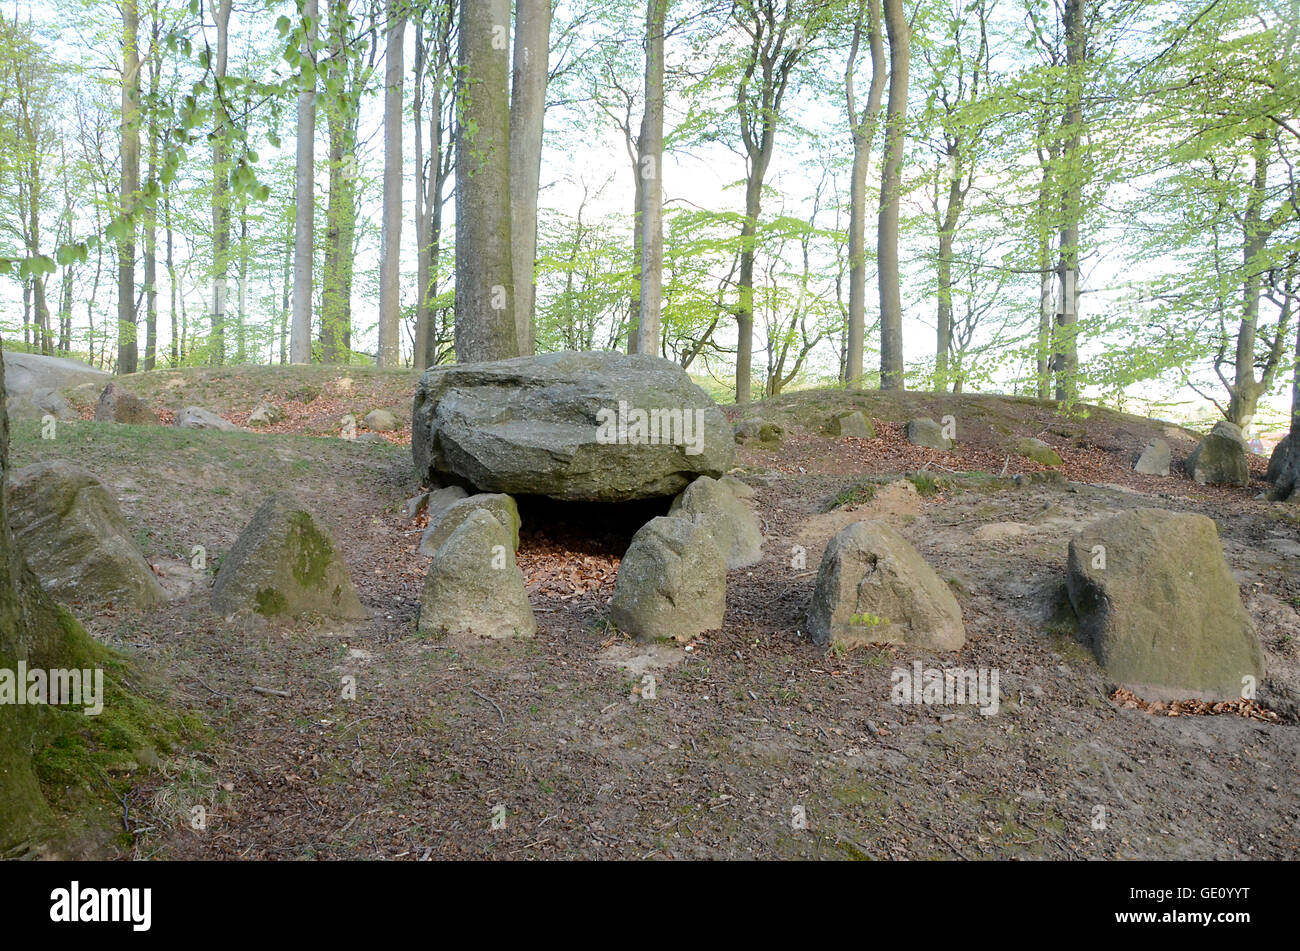 Die bronzezeitlichen Grabhügel bei Blomeskobbel in Dänemark. Sie tief im Wald zu verstecken, sondern erscheinen in einem guten Zustand. Stockfoto